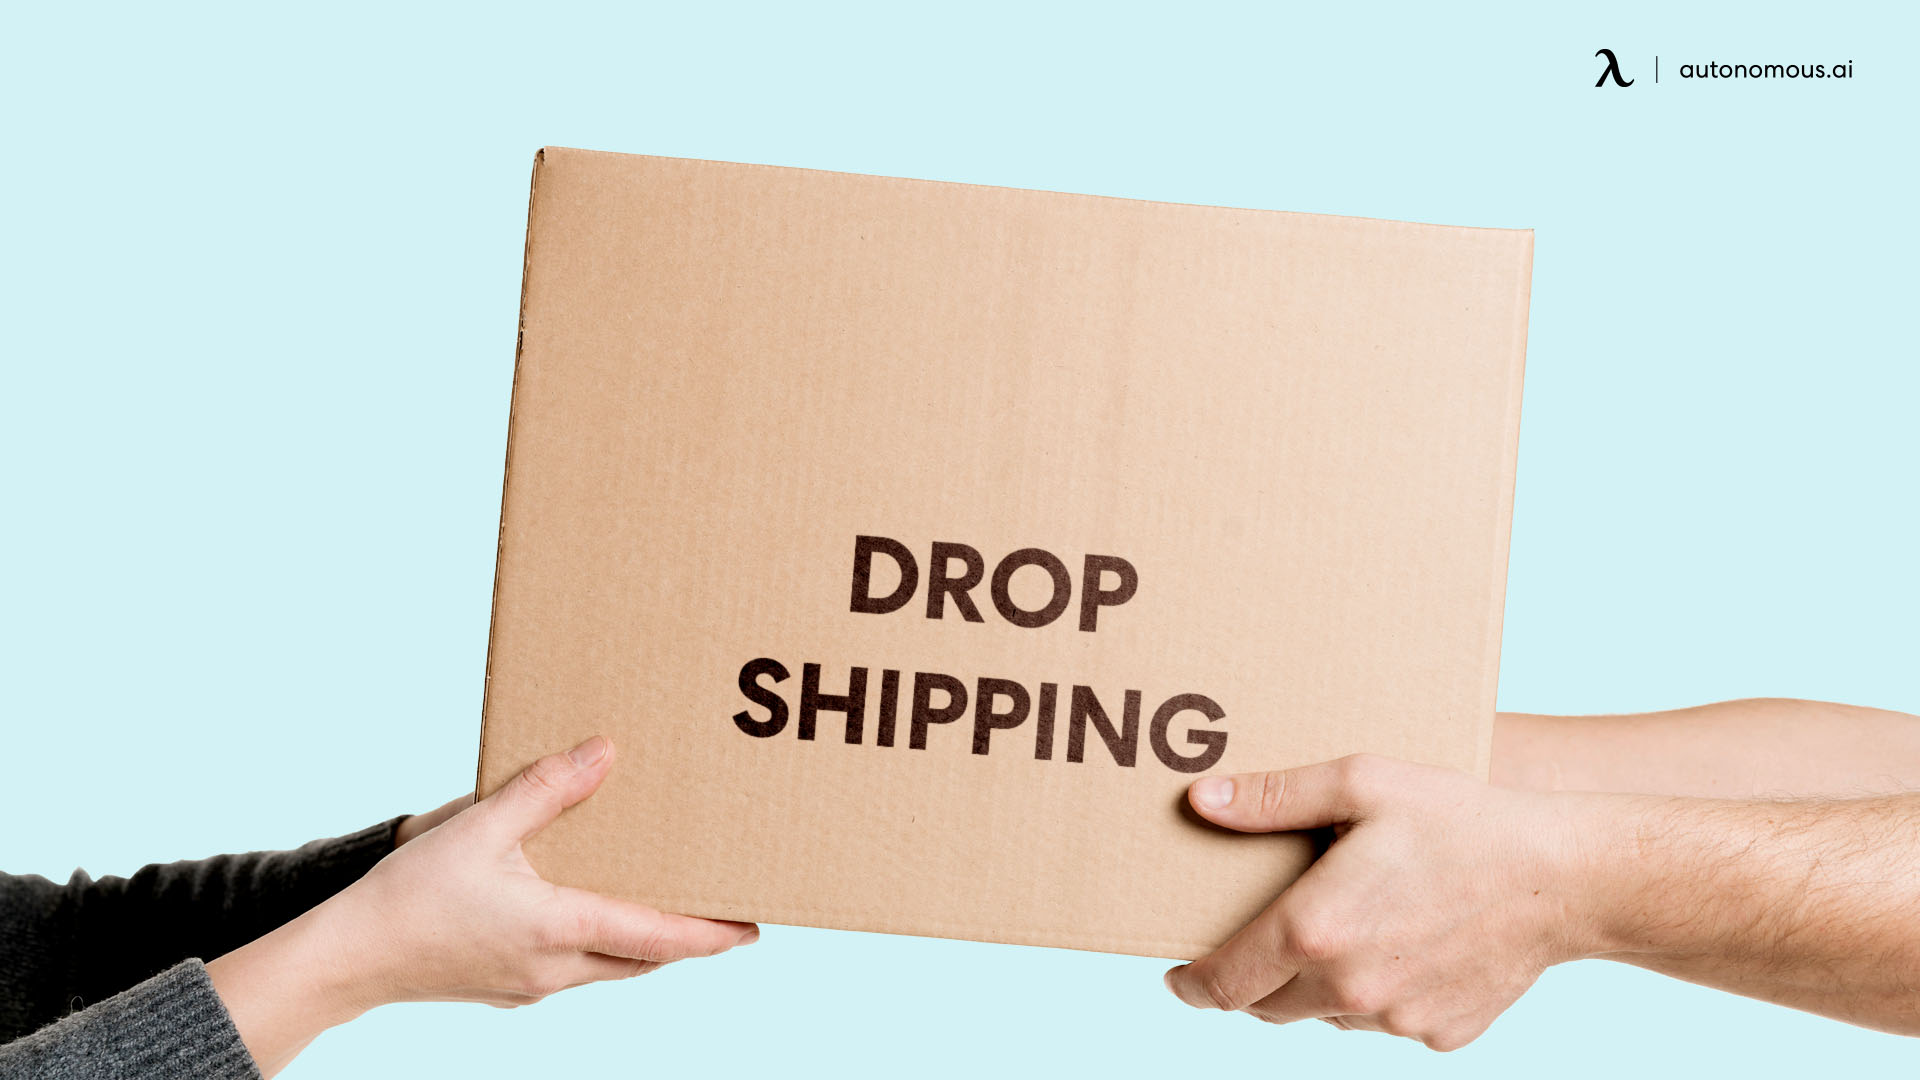 Drop shipping